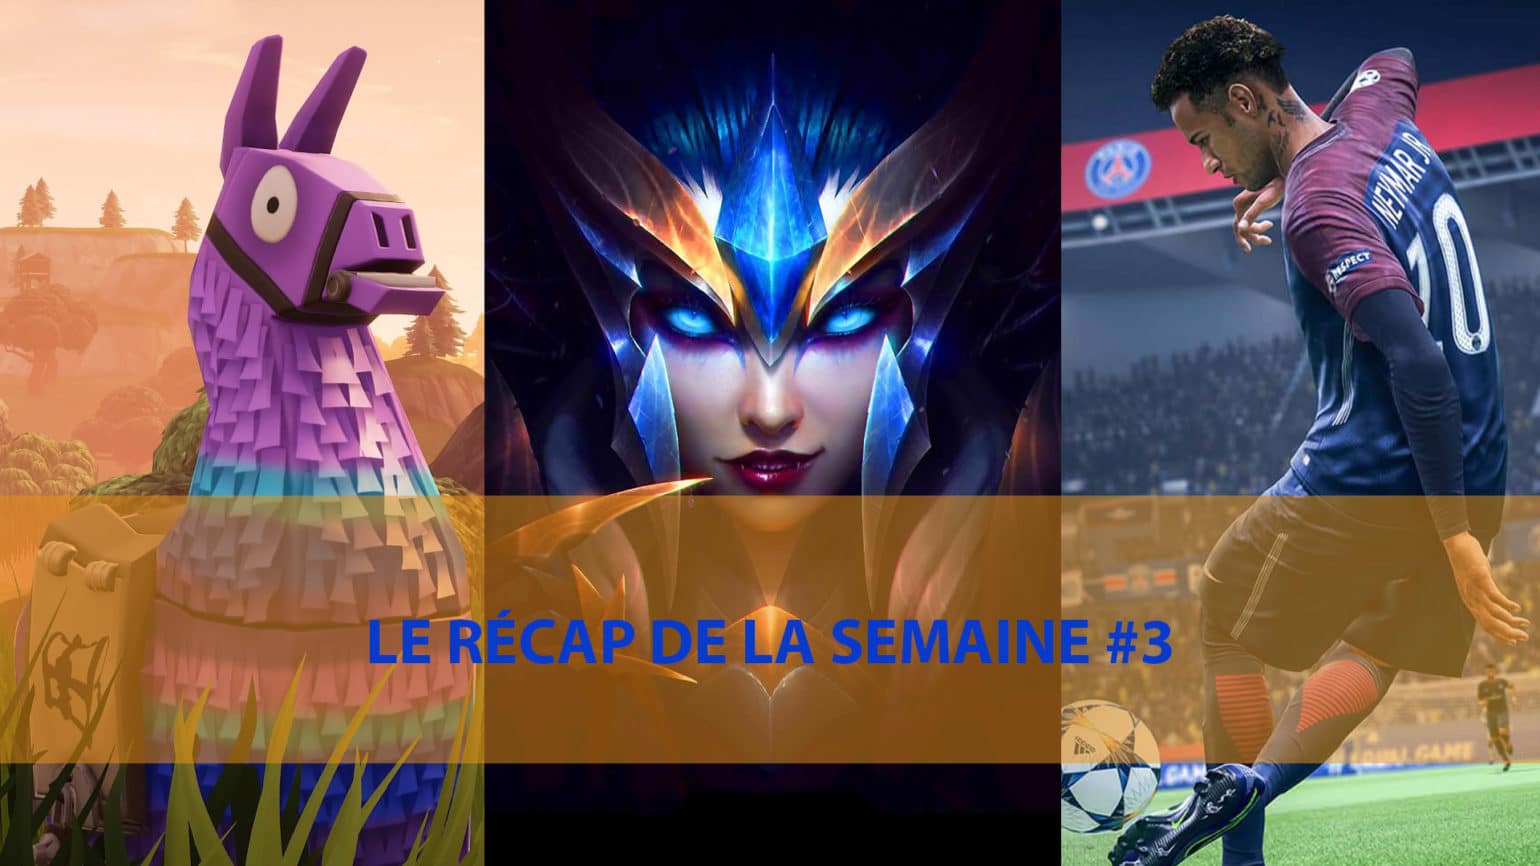 Le Récap de la Semaine - League of Legends, Fortnite, FIFA 20 and Co.